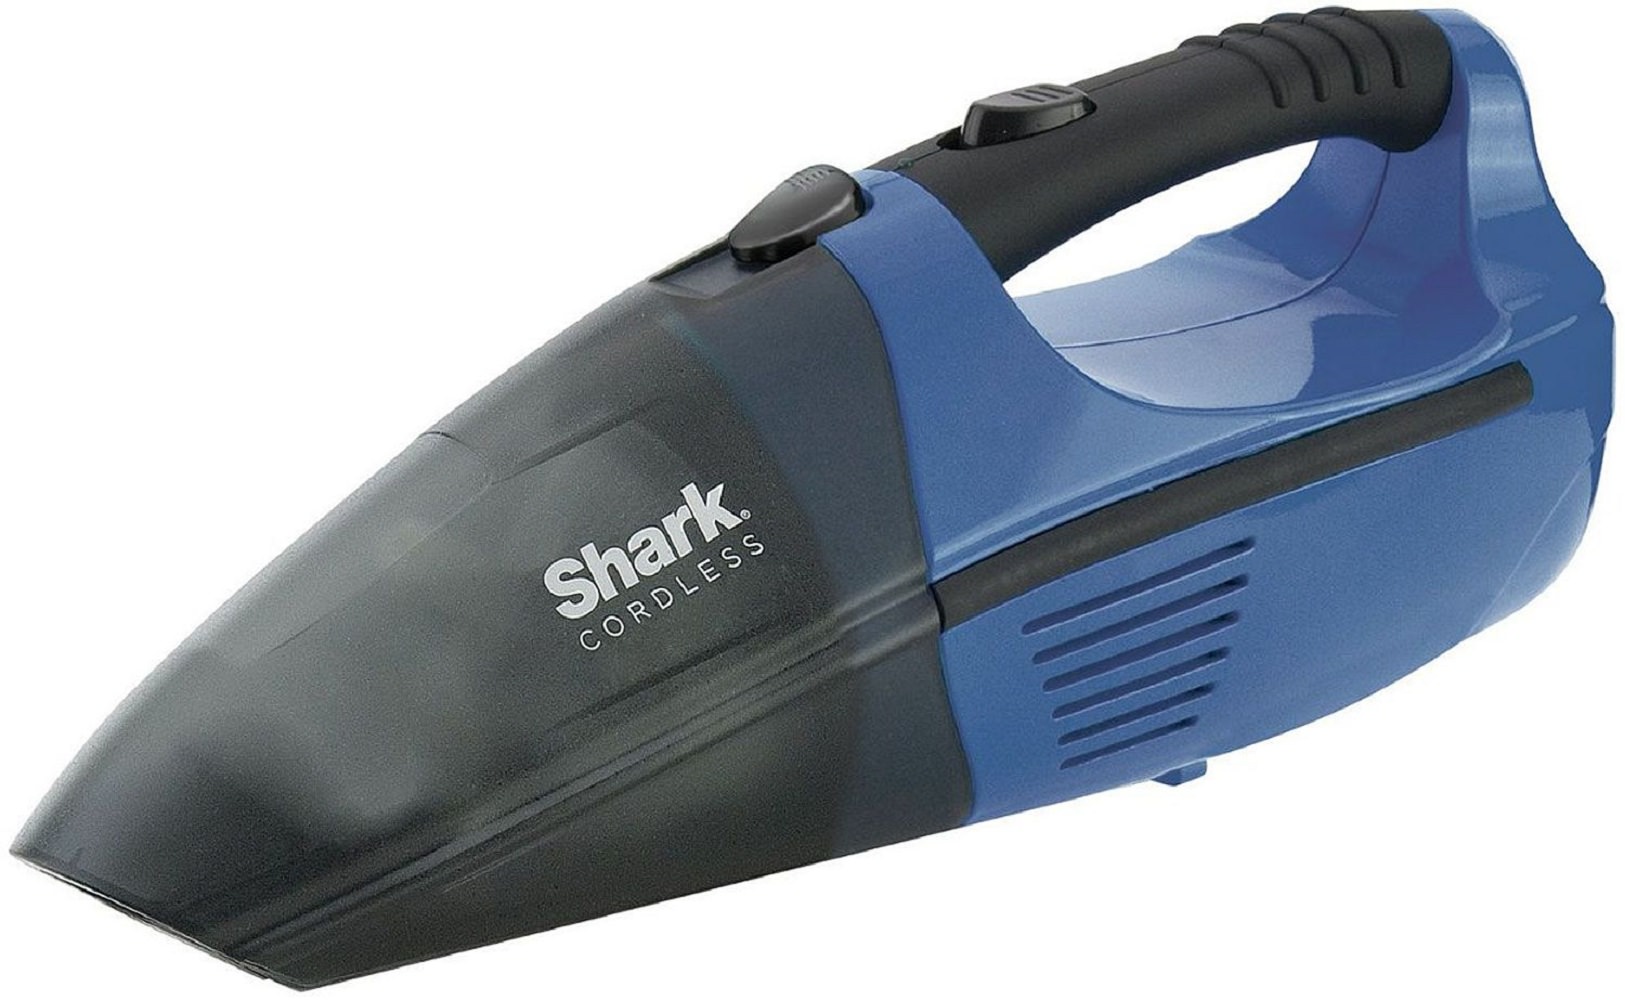 shark cordless vacuum pet pro